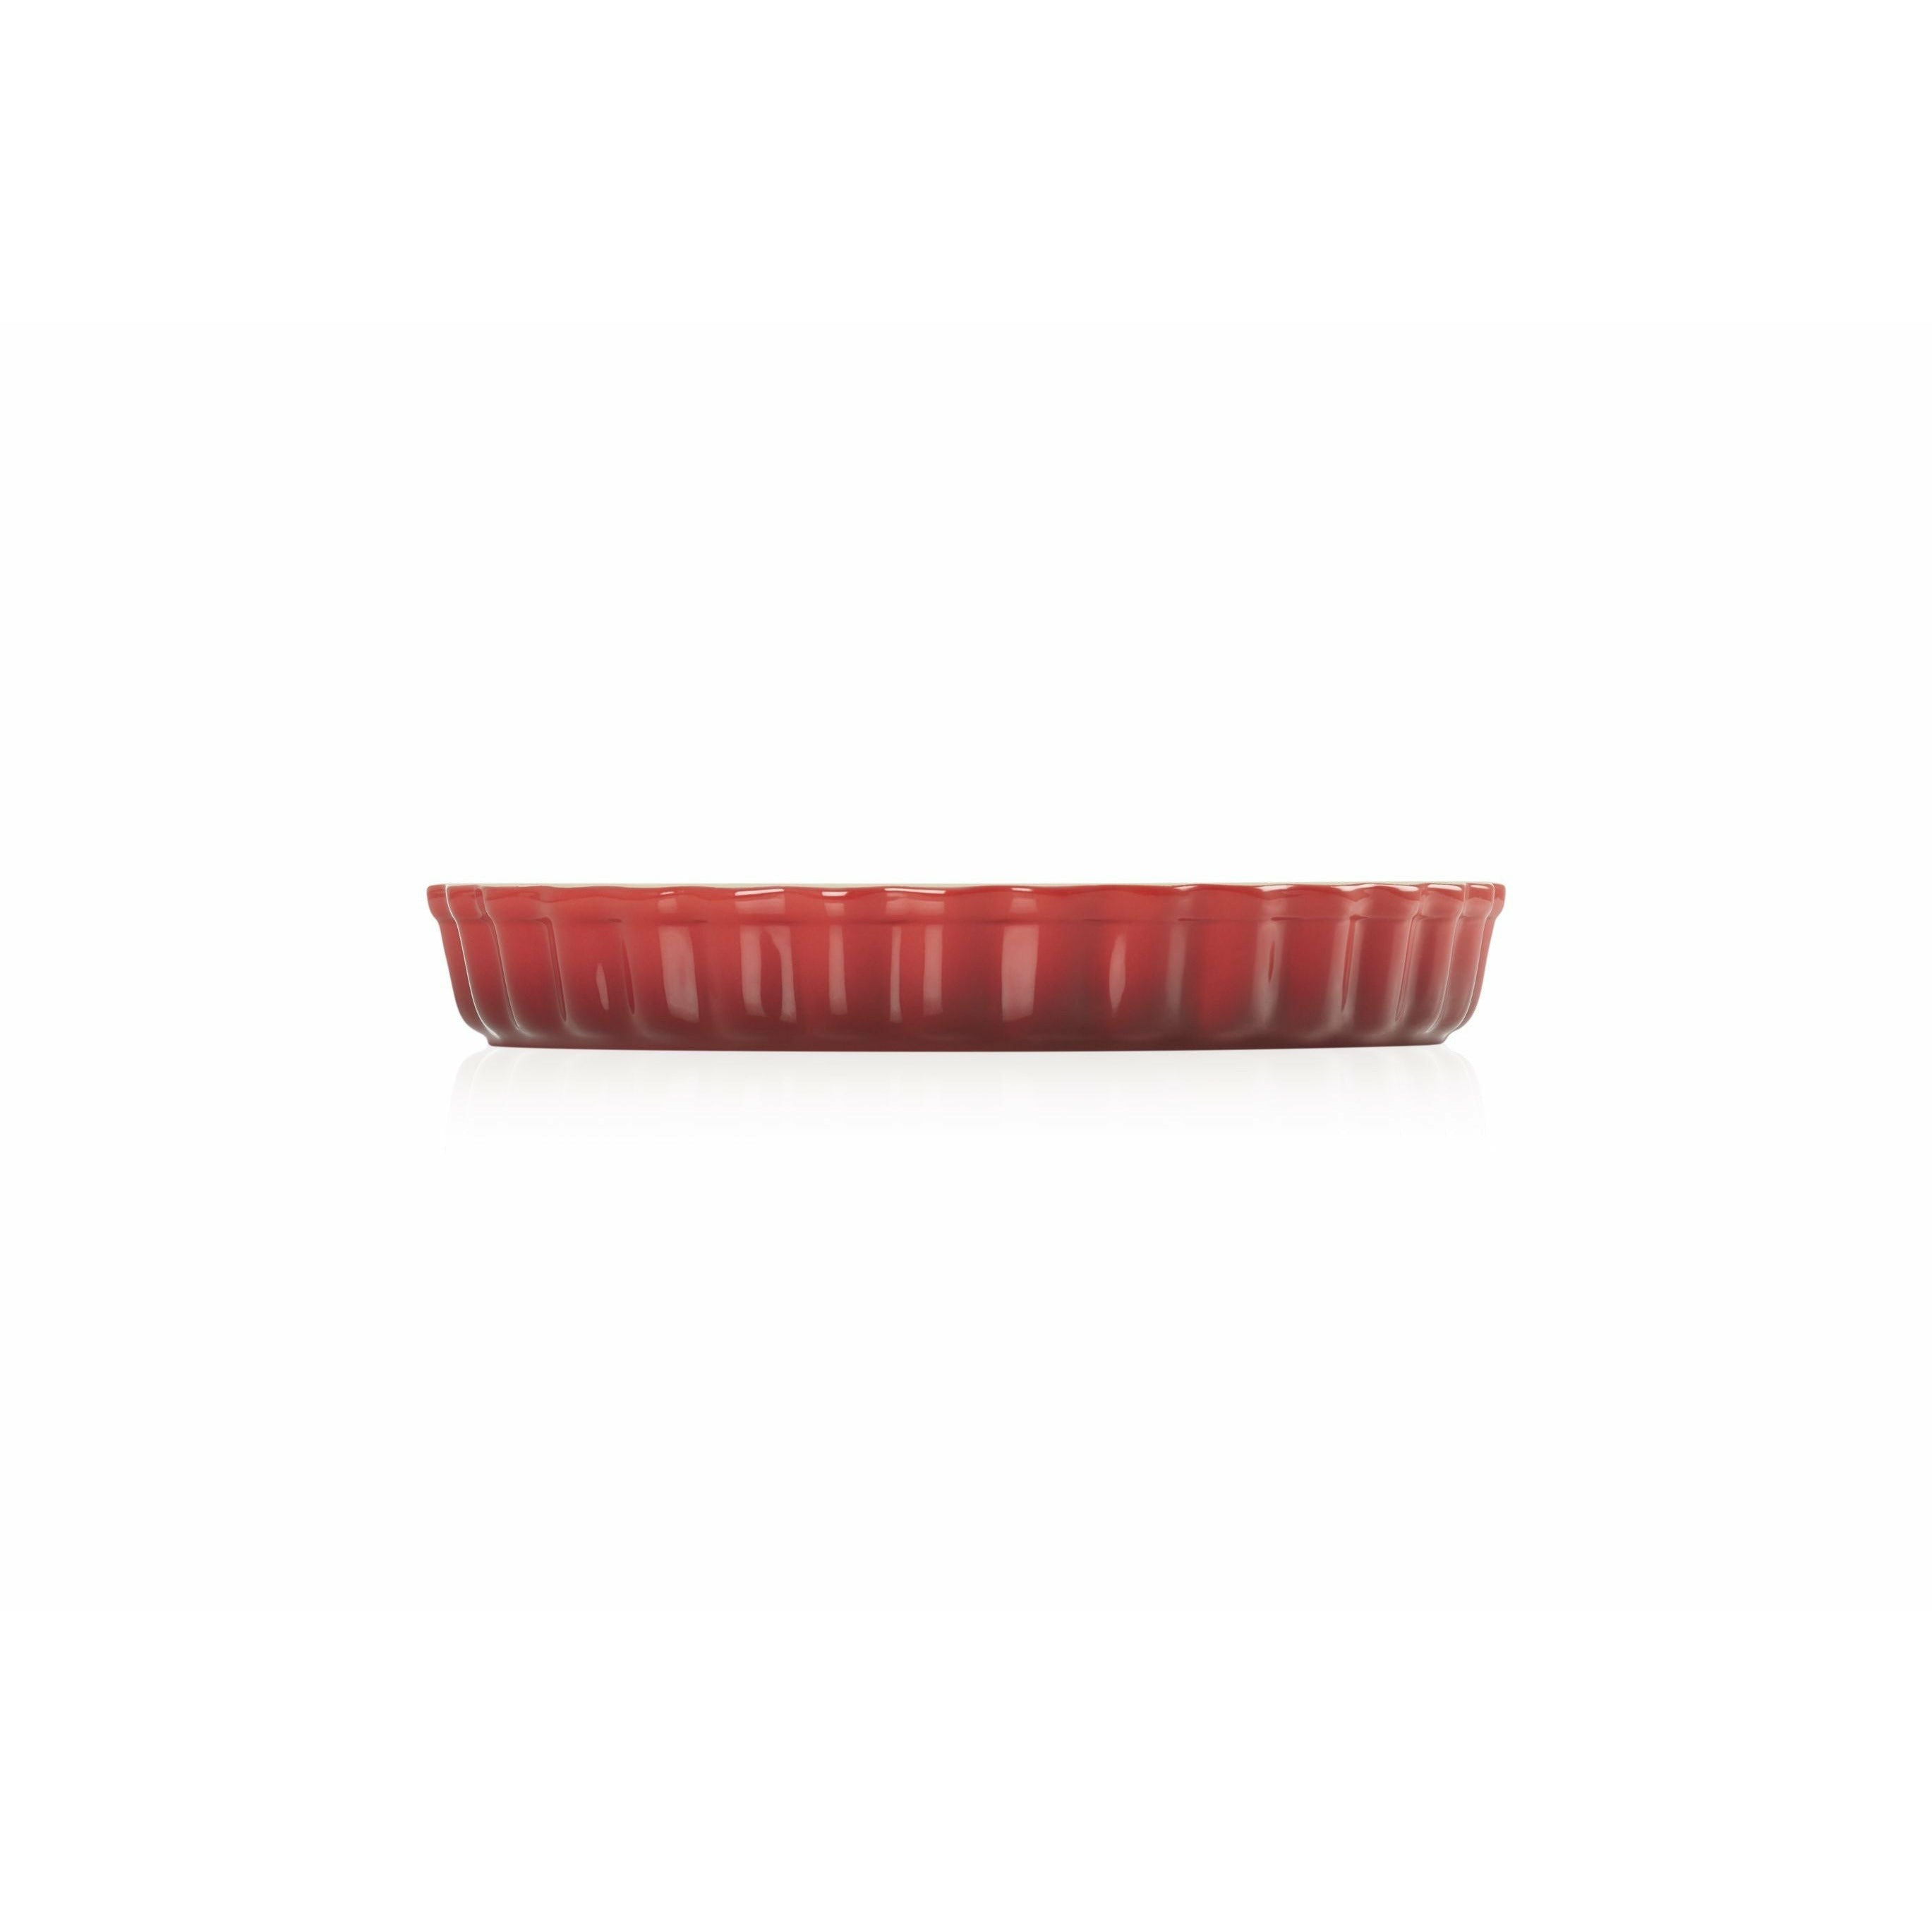 La stagno della torta del patrimonio di le creuset 28 cm, rosso ciliegia